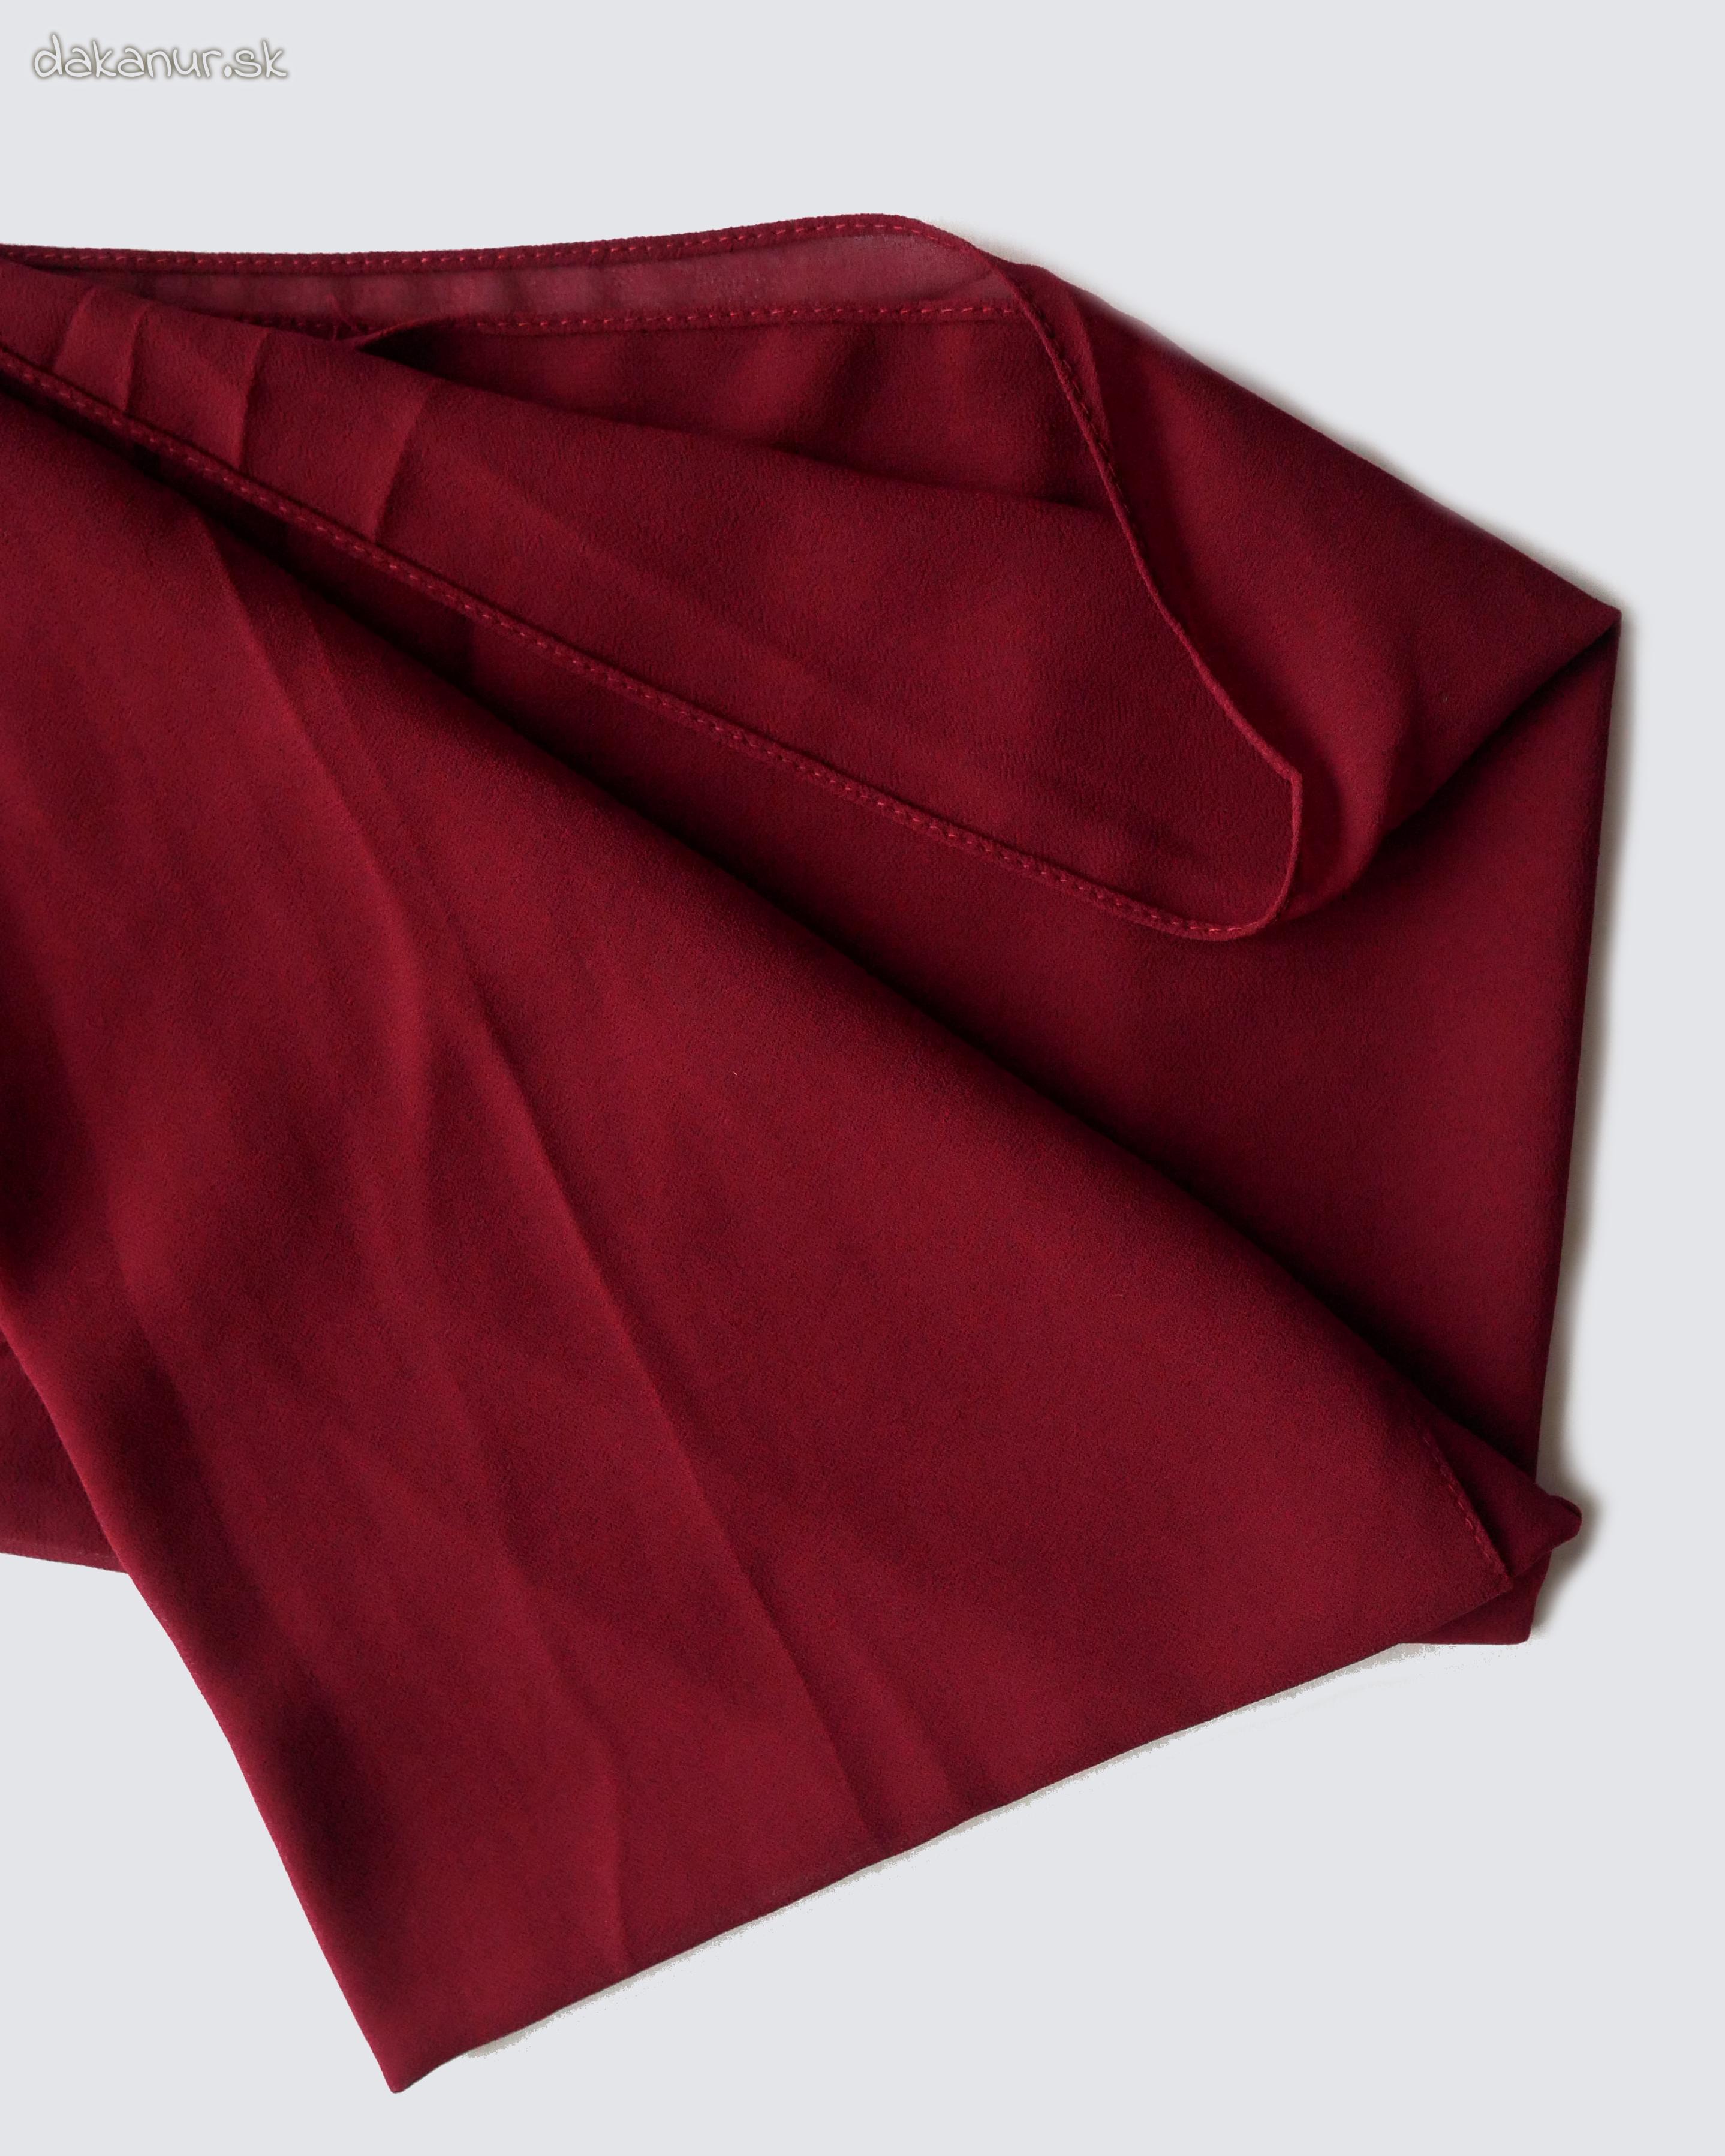 Šifónový bordovo červený šál, hijáb